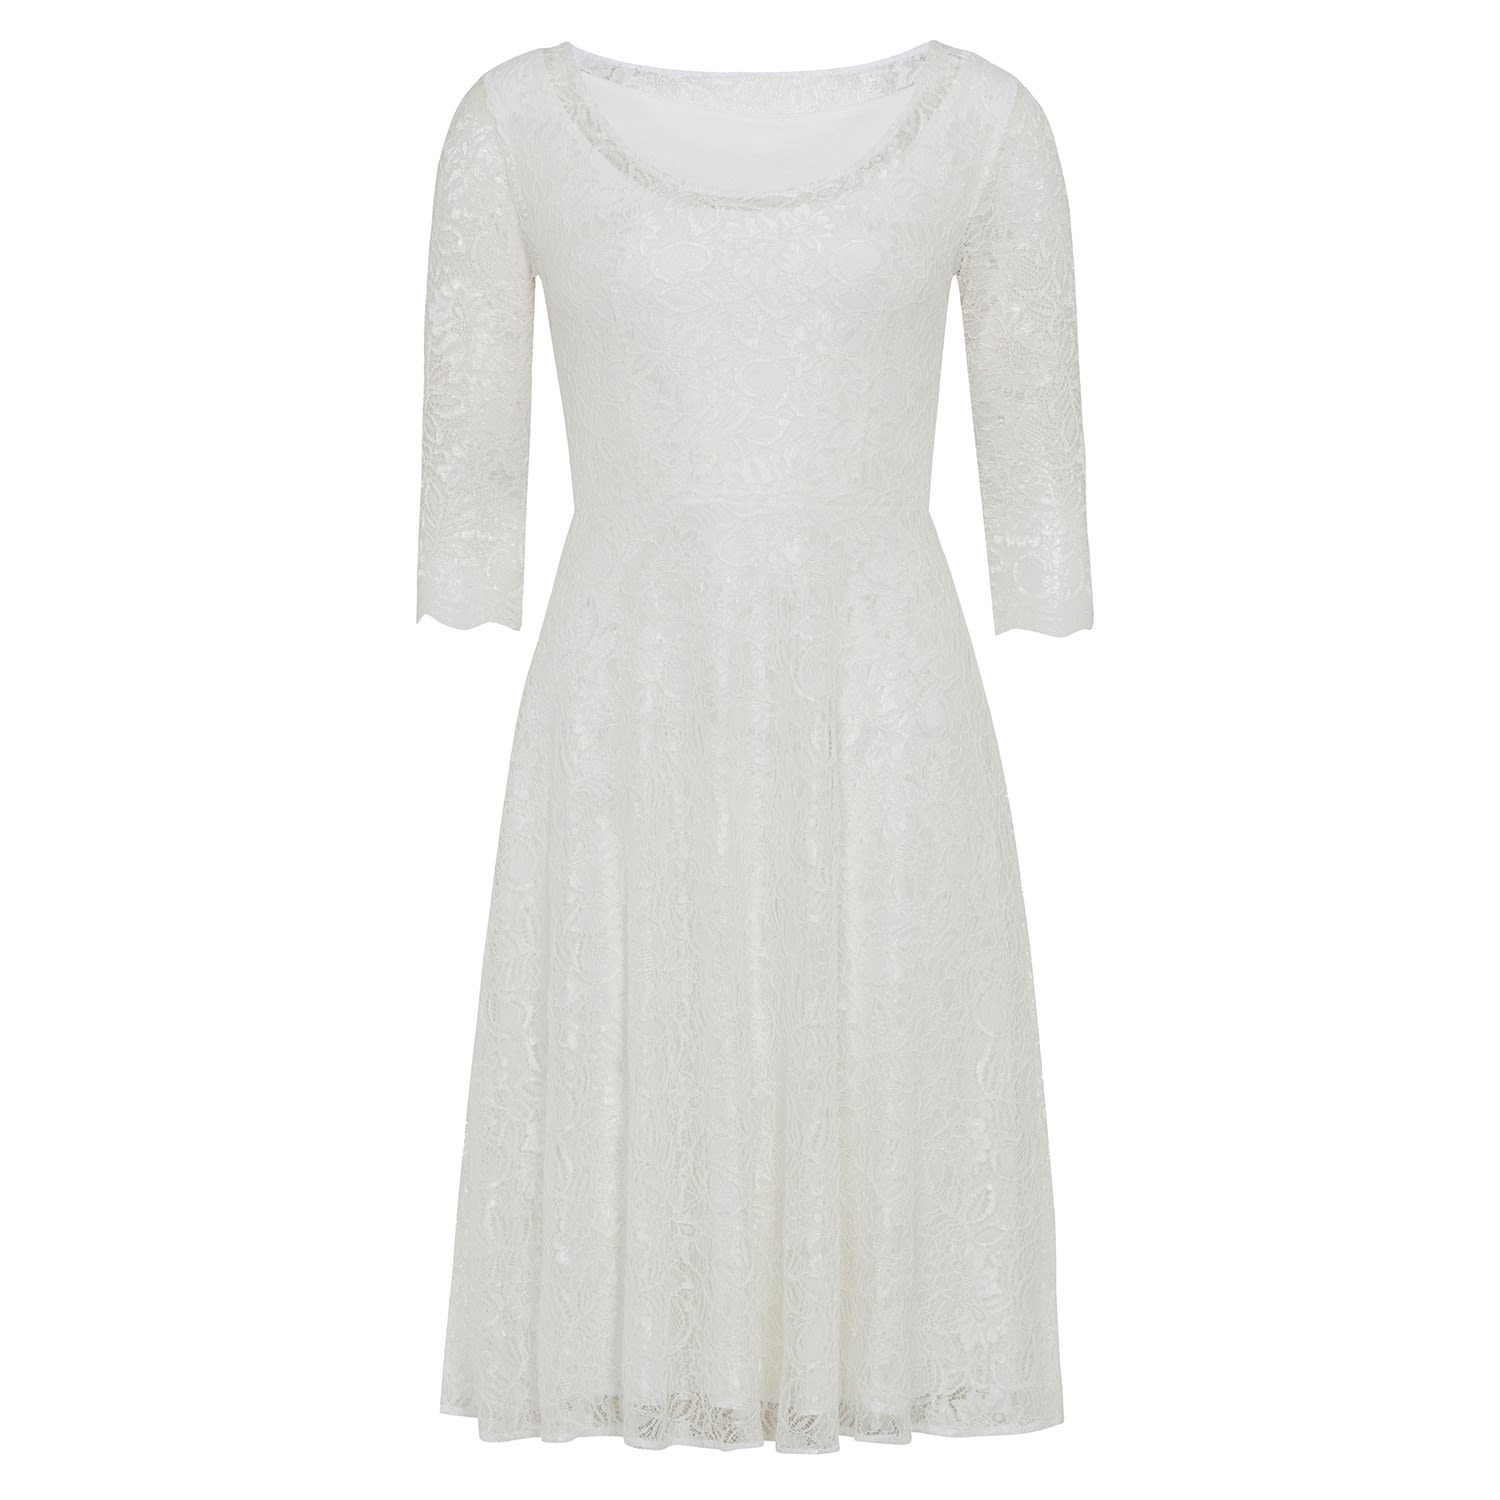 Women’s White Arabella Short Lace Wedding Dress In Ivory Xxs/Xs Alie Street London